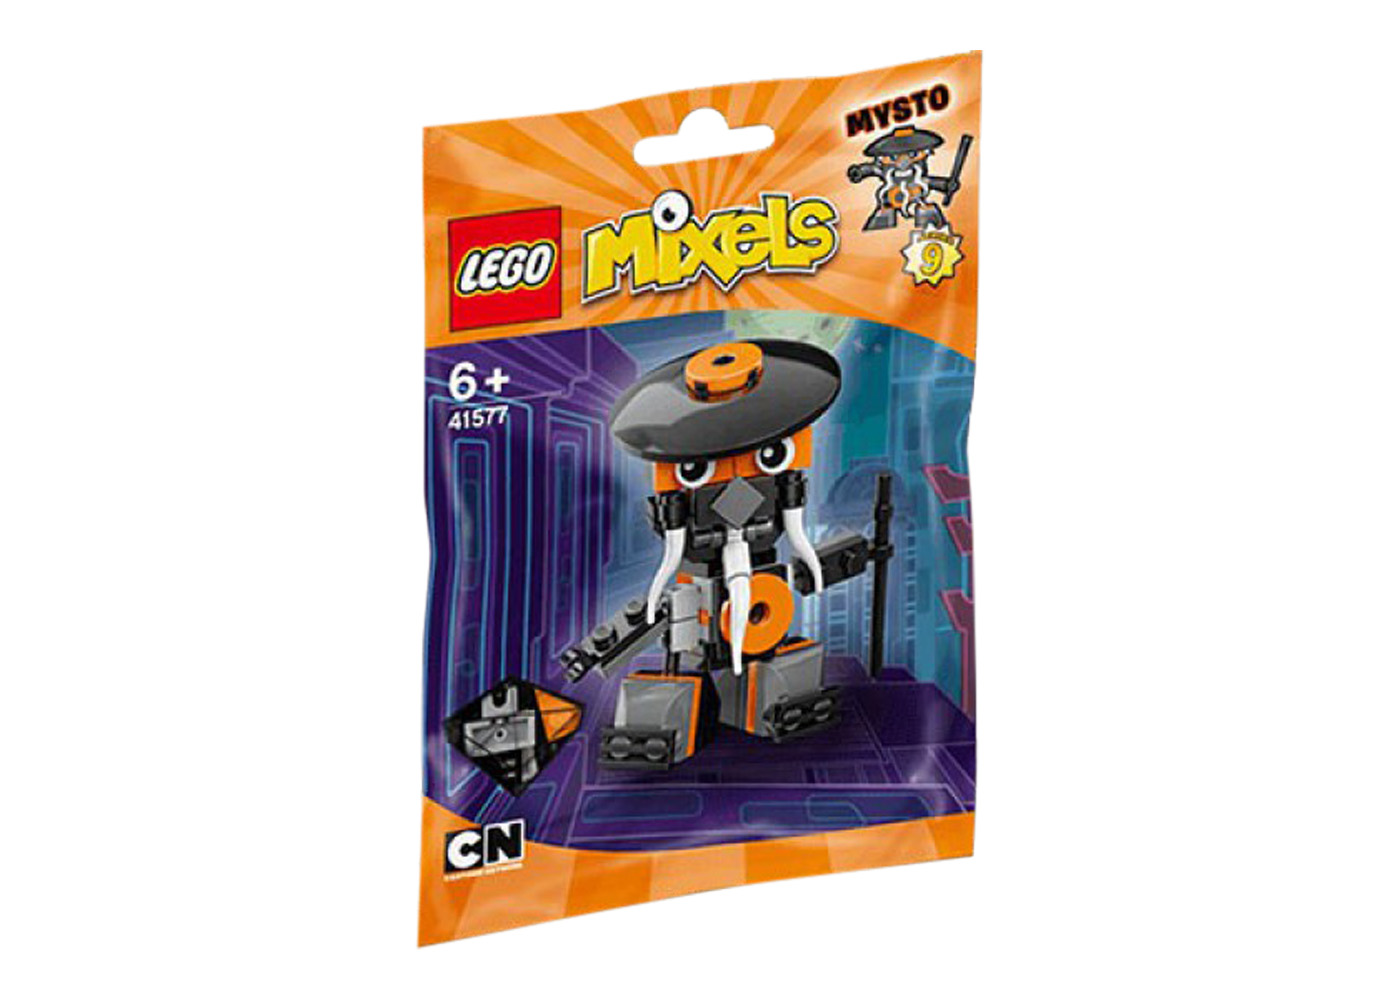 LEGO Mixels Sweepz Set 41573 - US